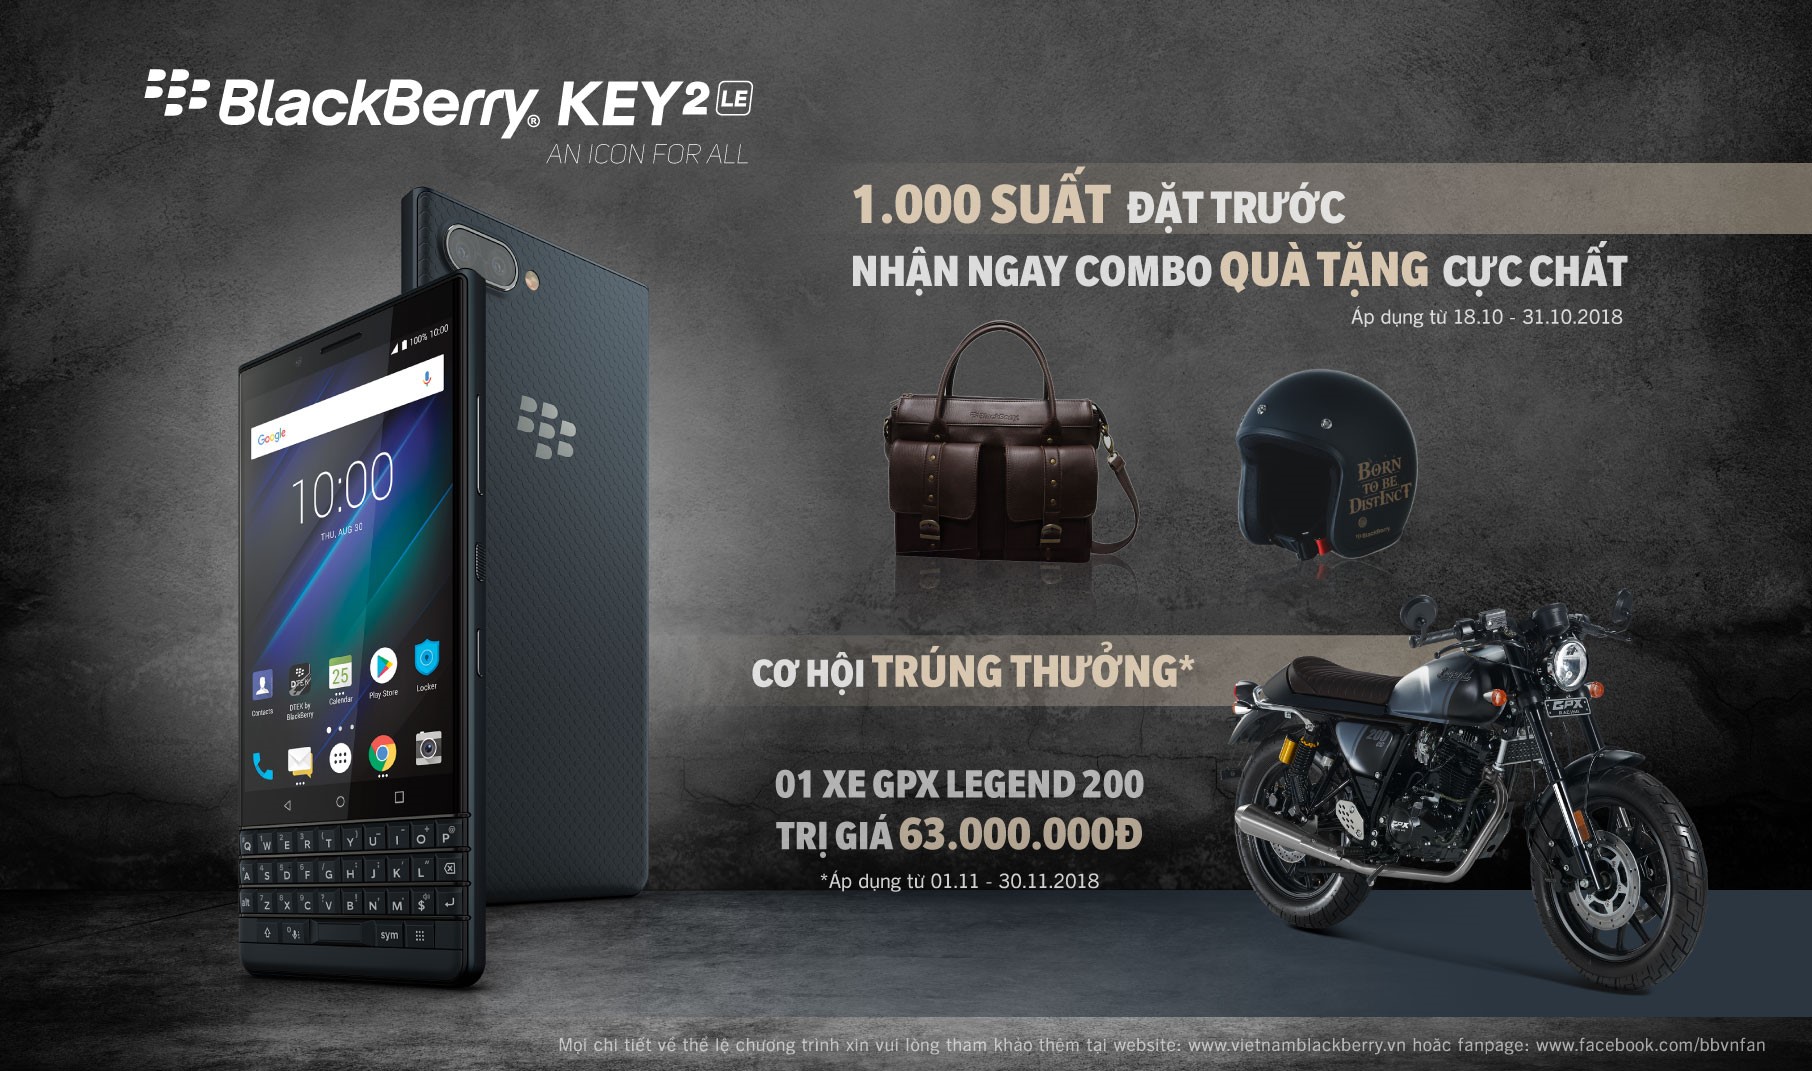 BlackBerry Key2 LE bán chính hãng Việt Nam với giá 11.790.000 đồng